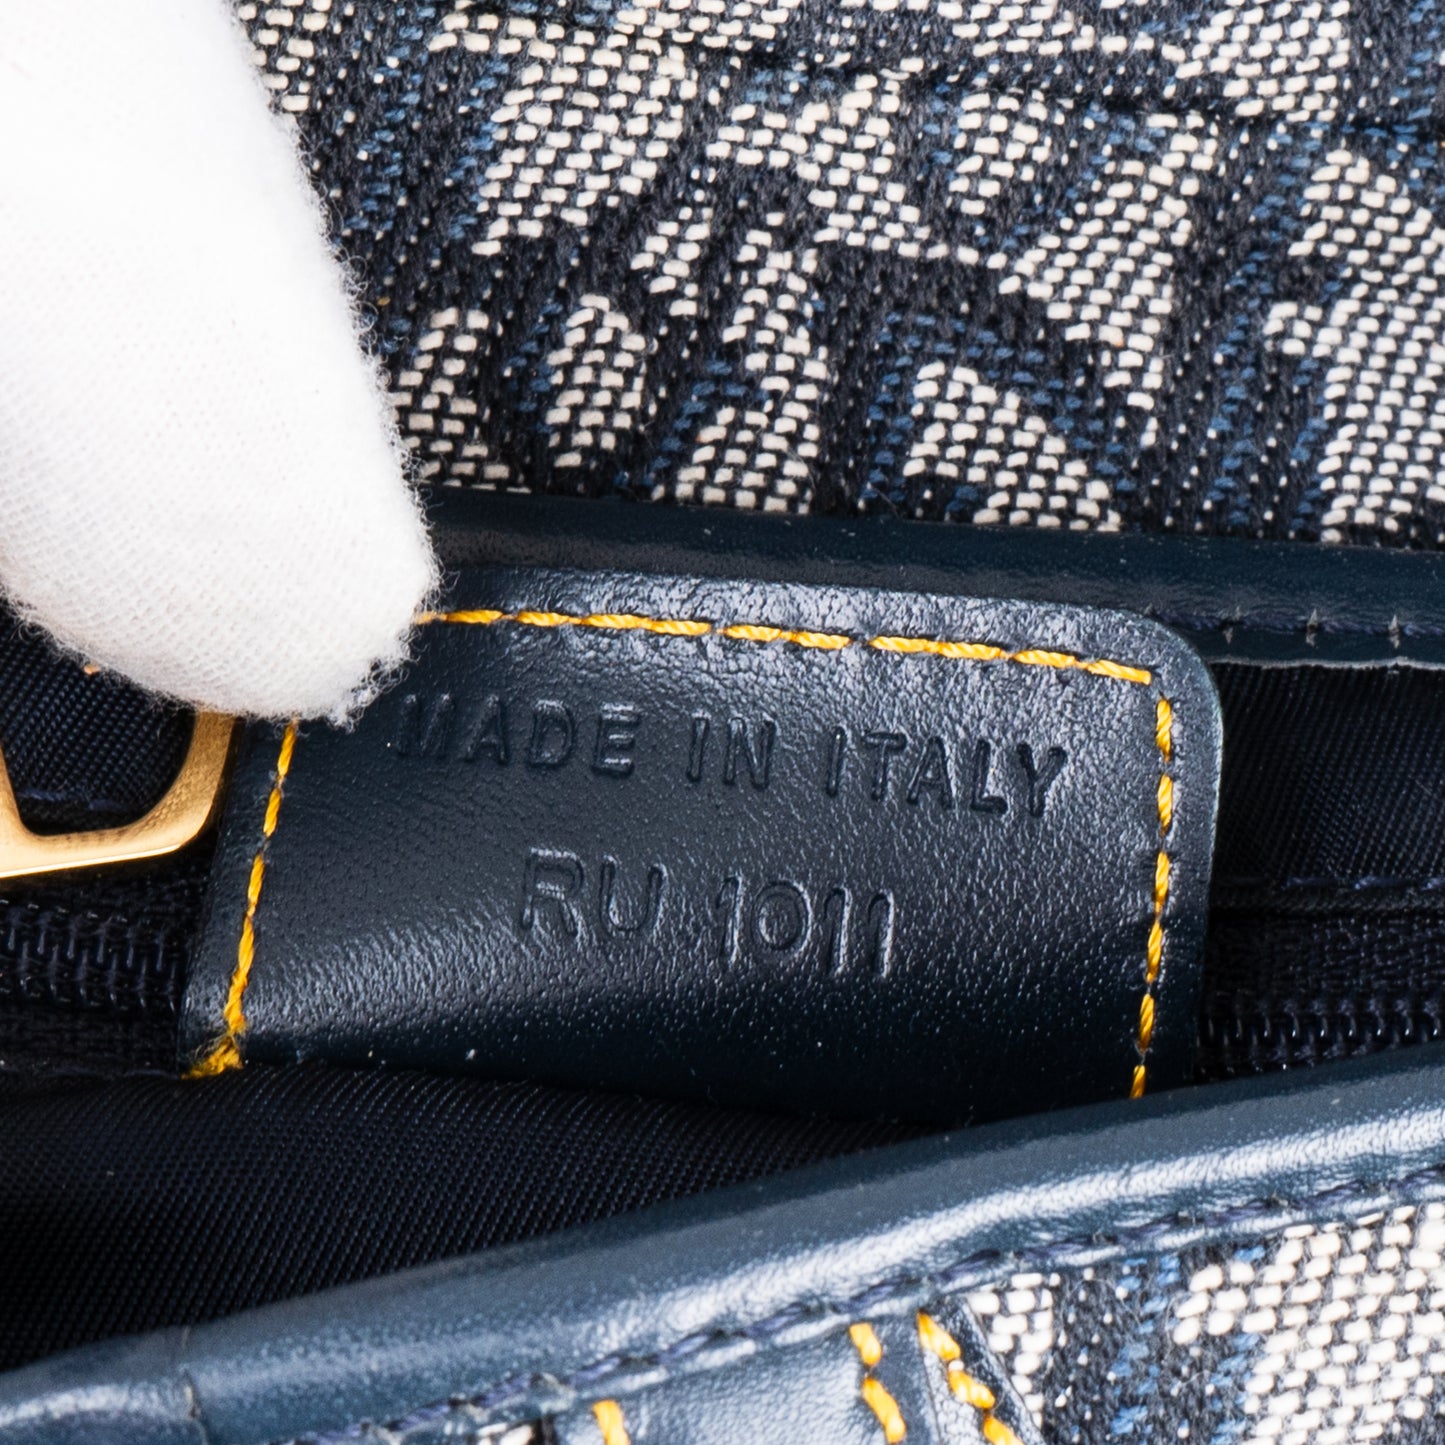 Christian Dior Oblique Trotter Saddle Bag